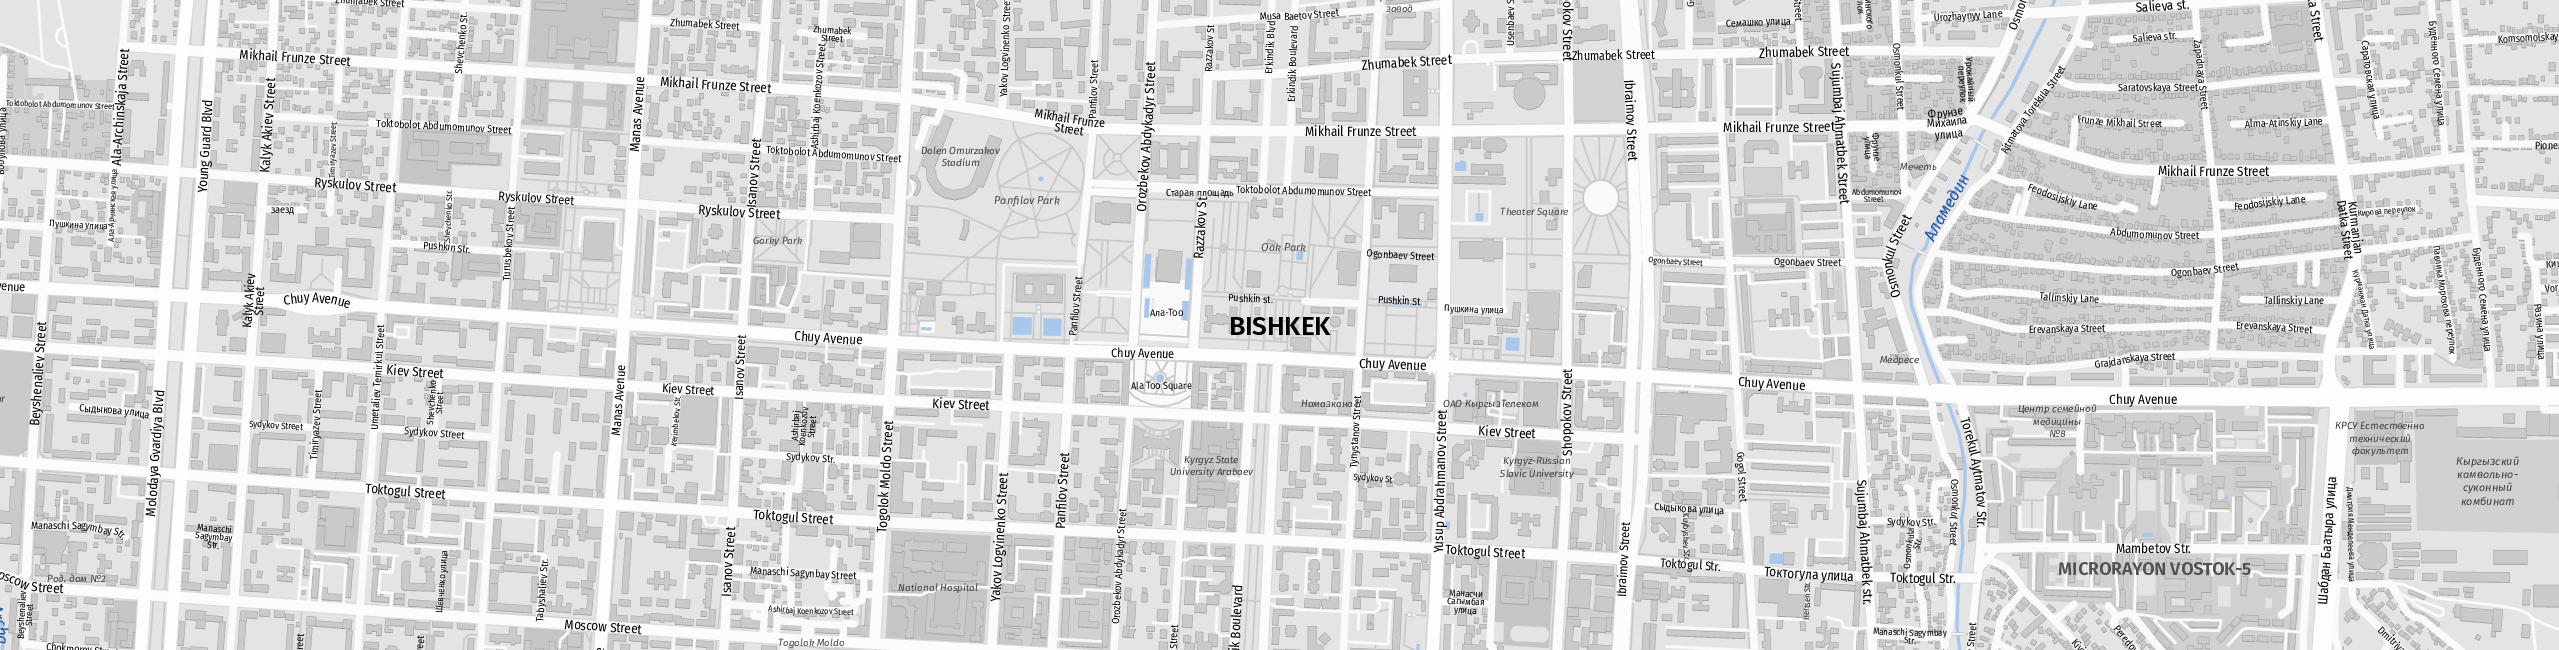 Stadtplan Bischkek zum Downloaden.